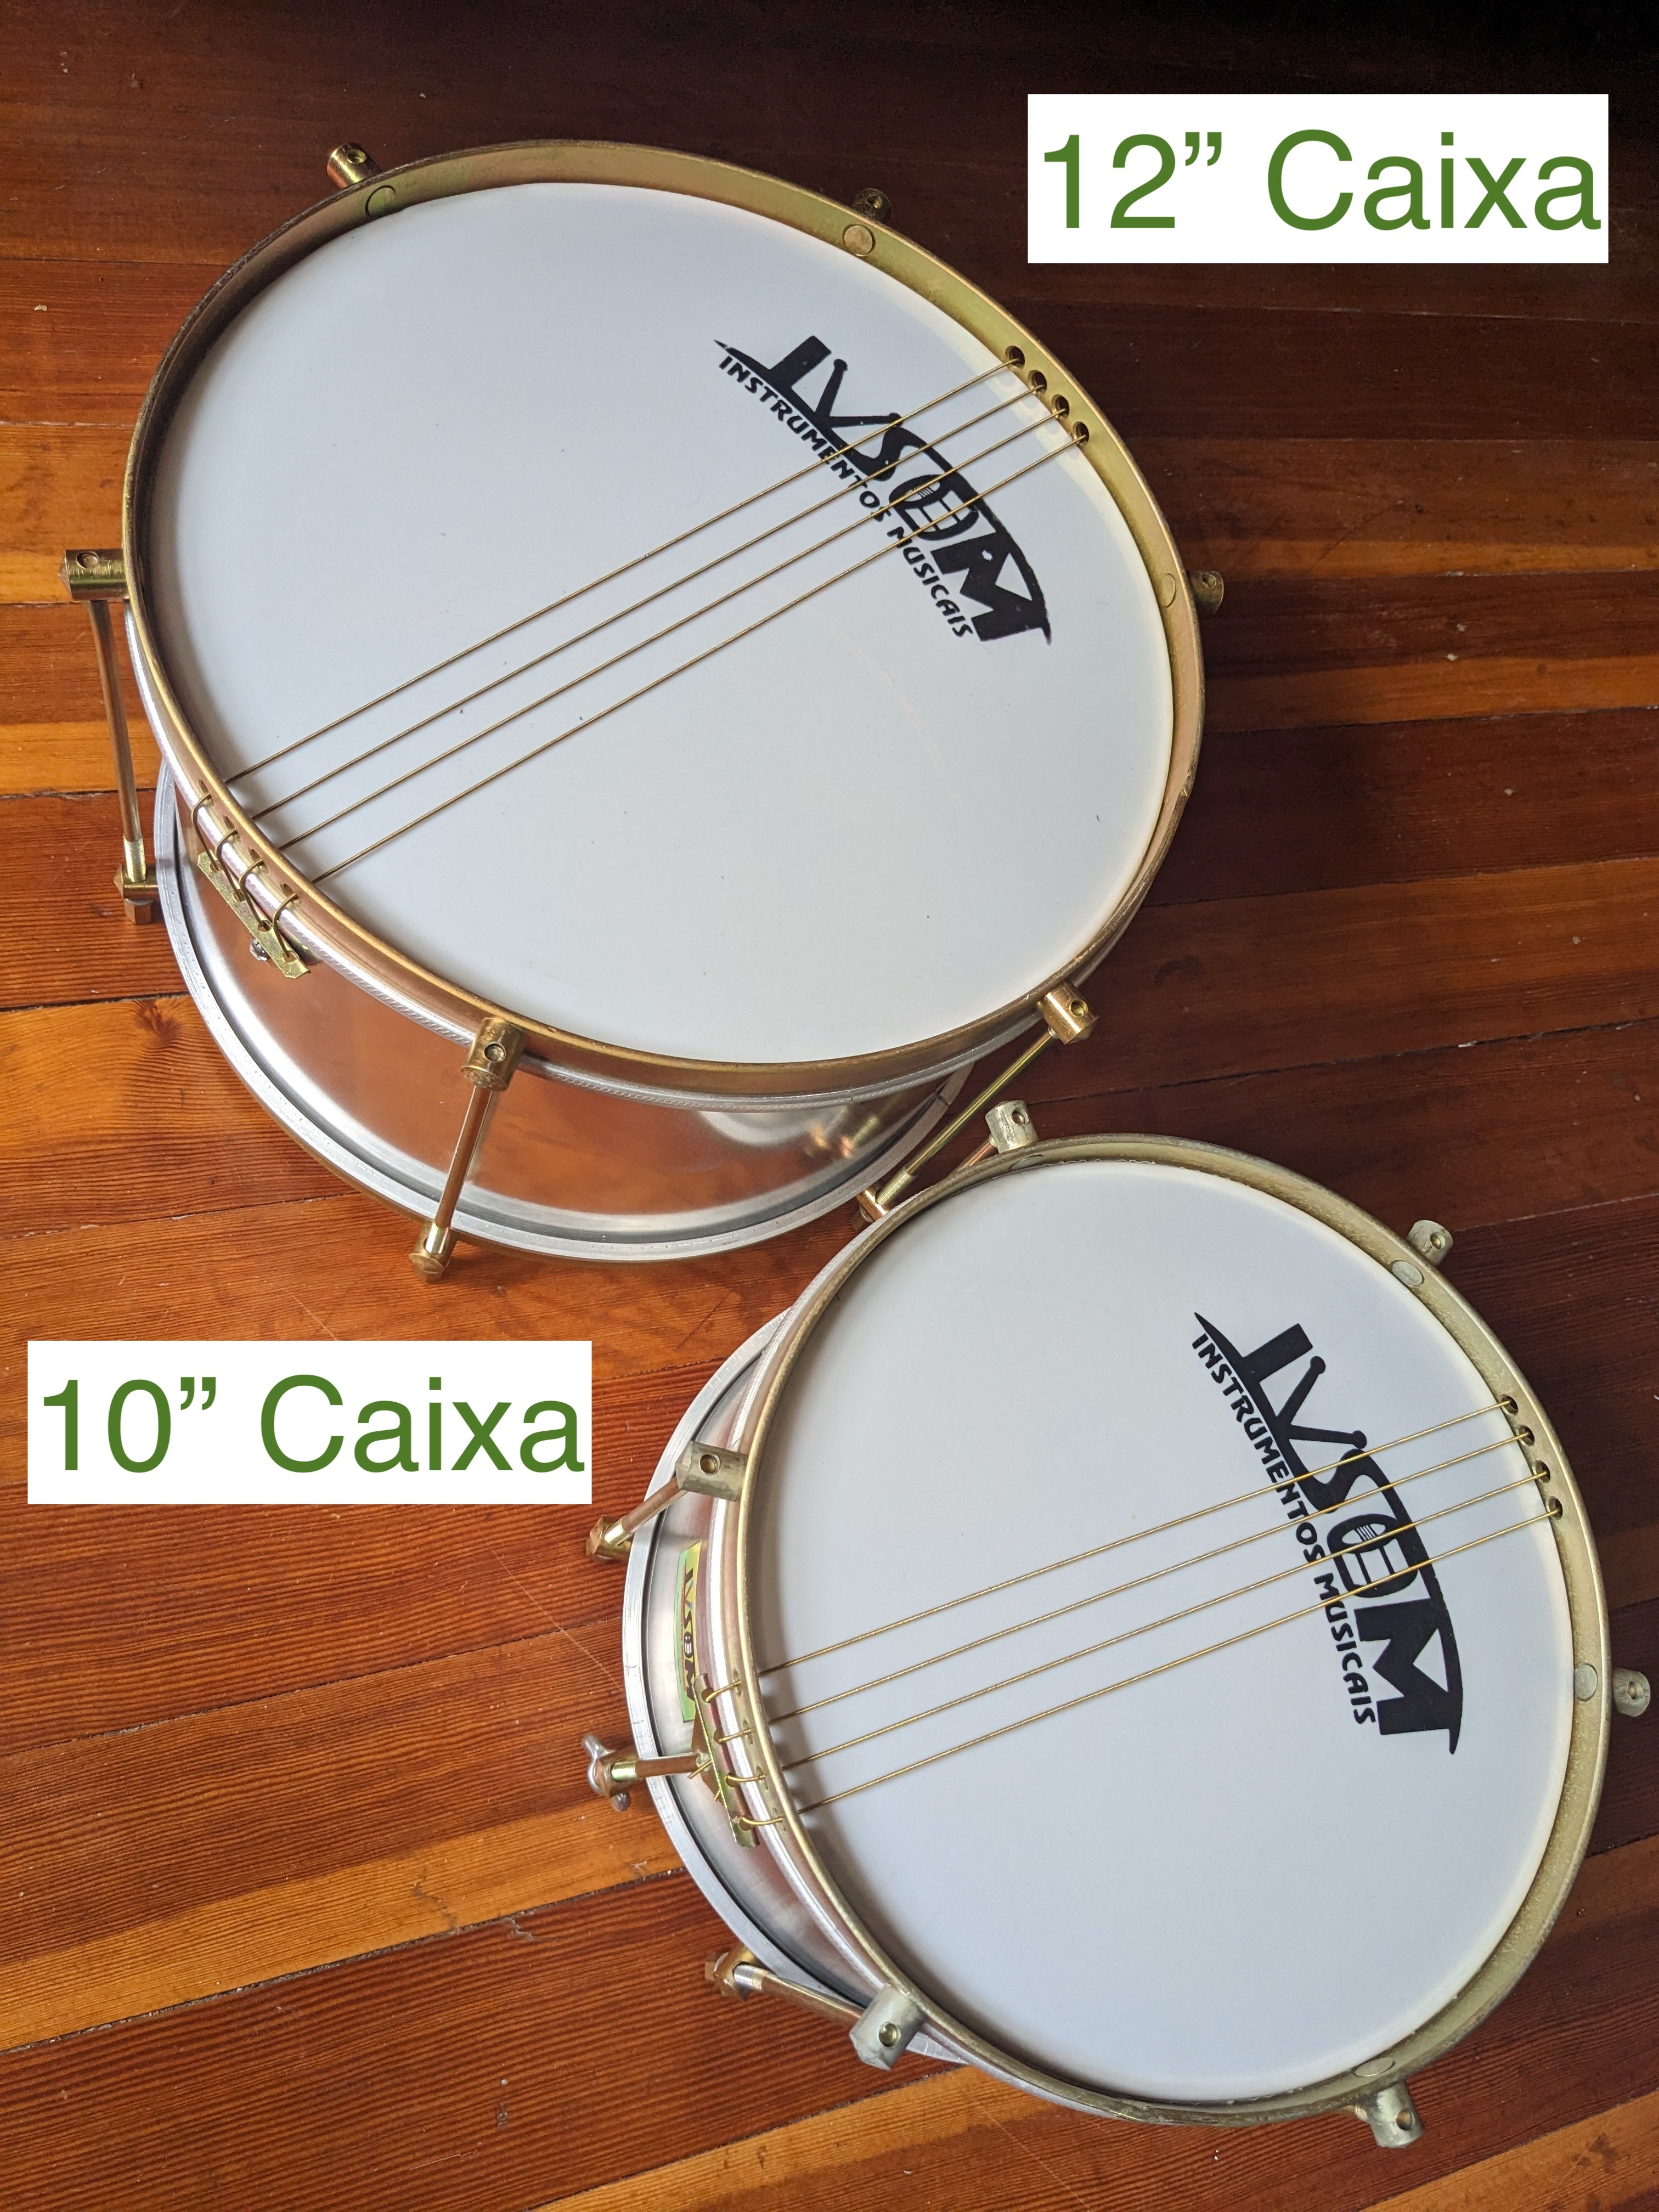 IVSOM Caixa, 4 strings, aluminum shell 10" x 6.25"